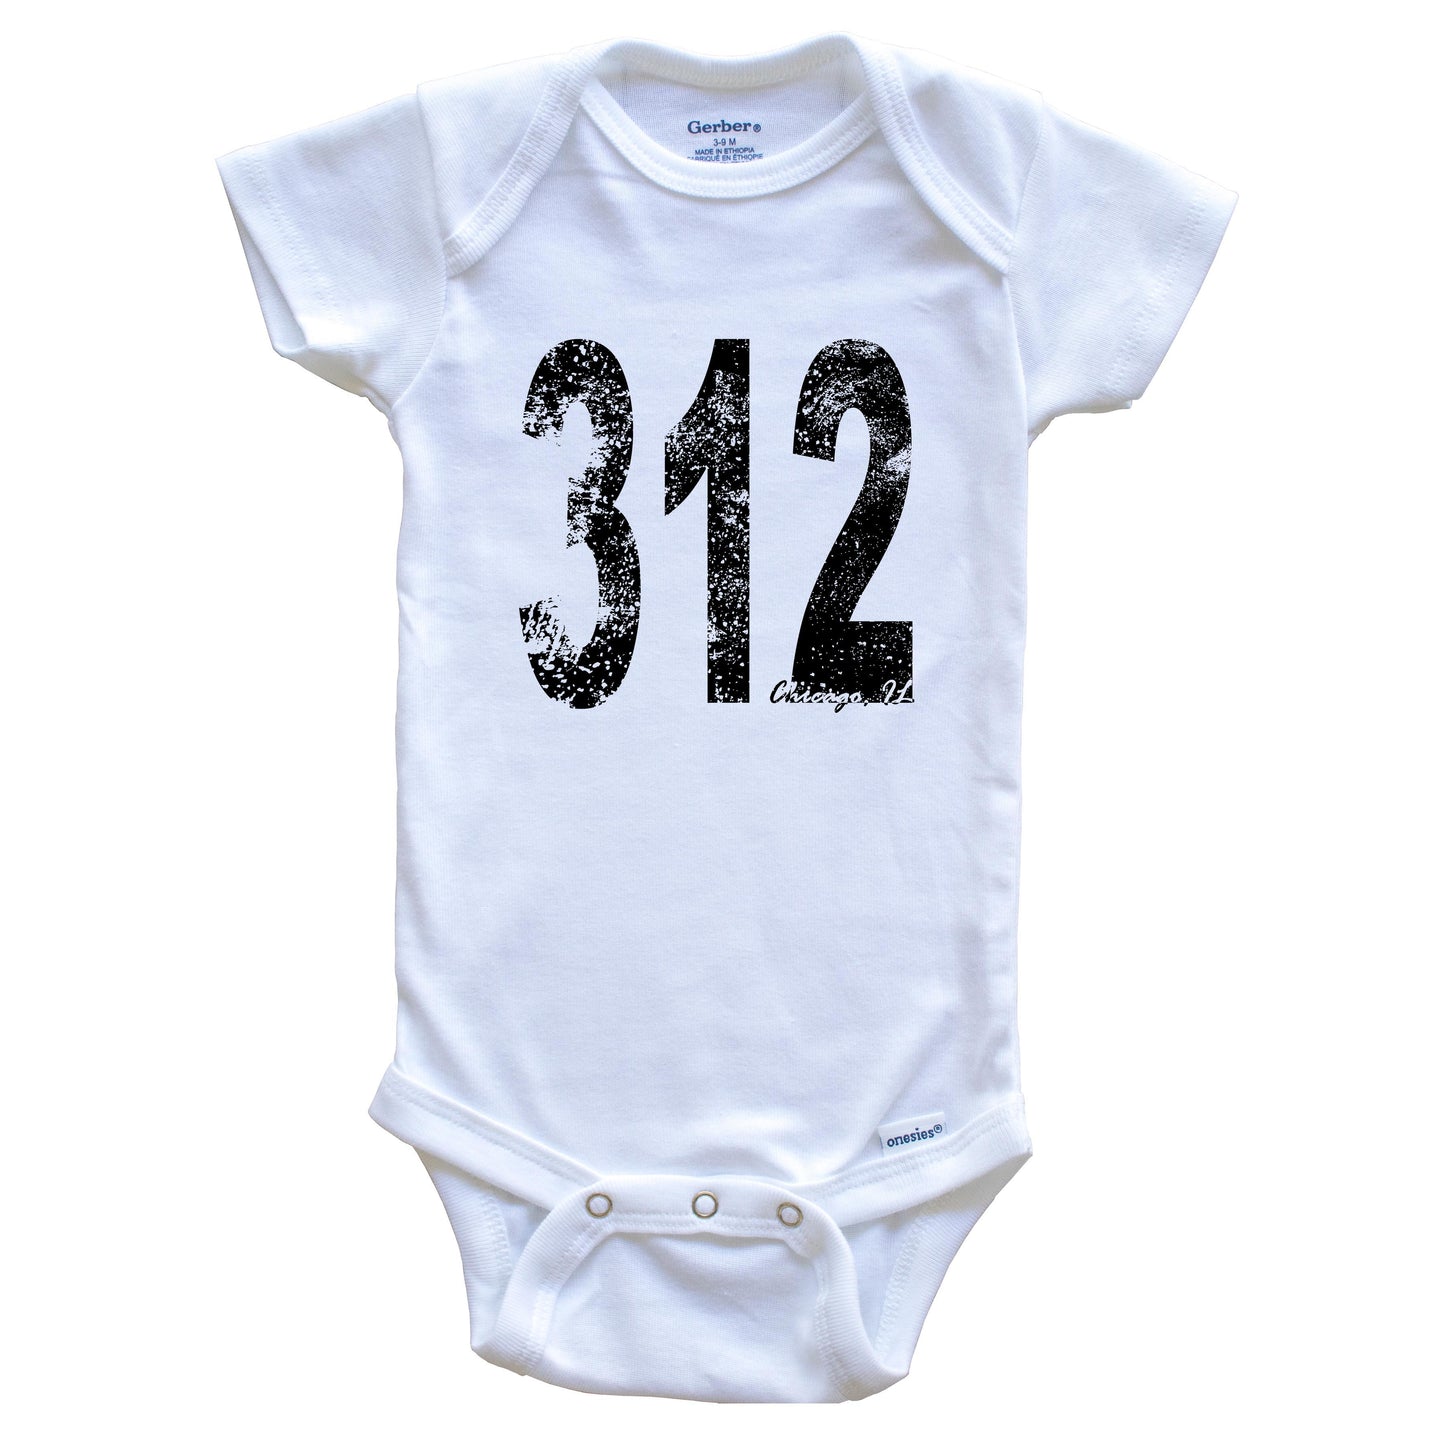 312 Chicago Illinois Area Code Baby Onesie - One Piece Baby Bodysuit